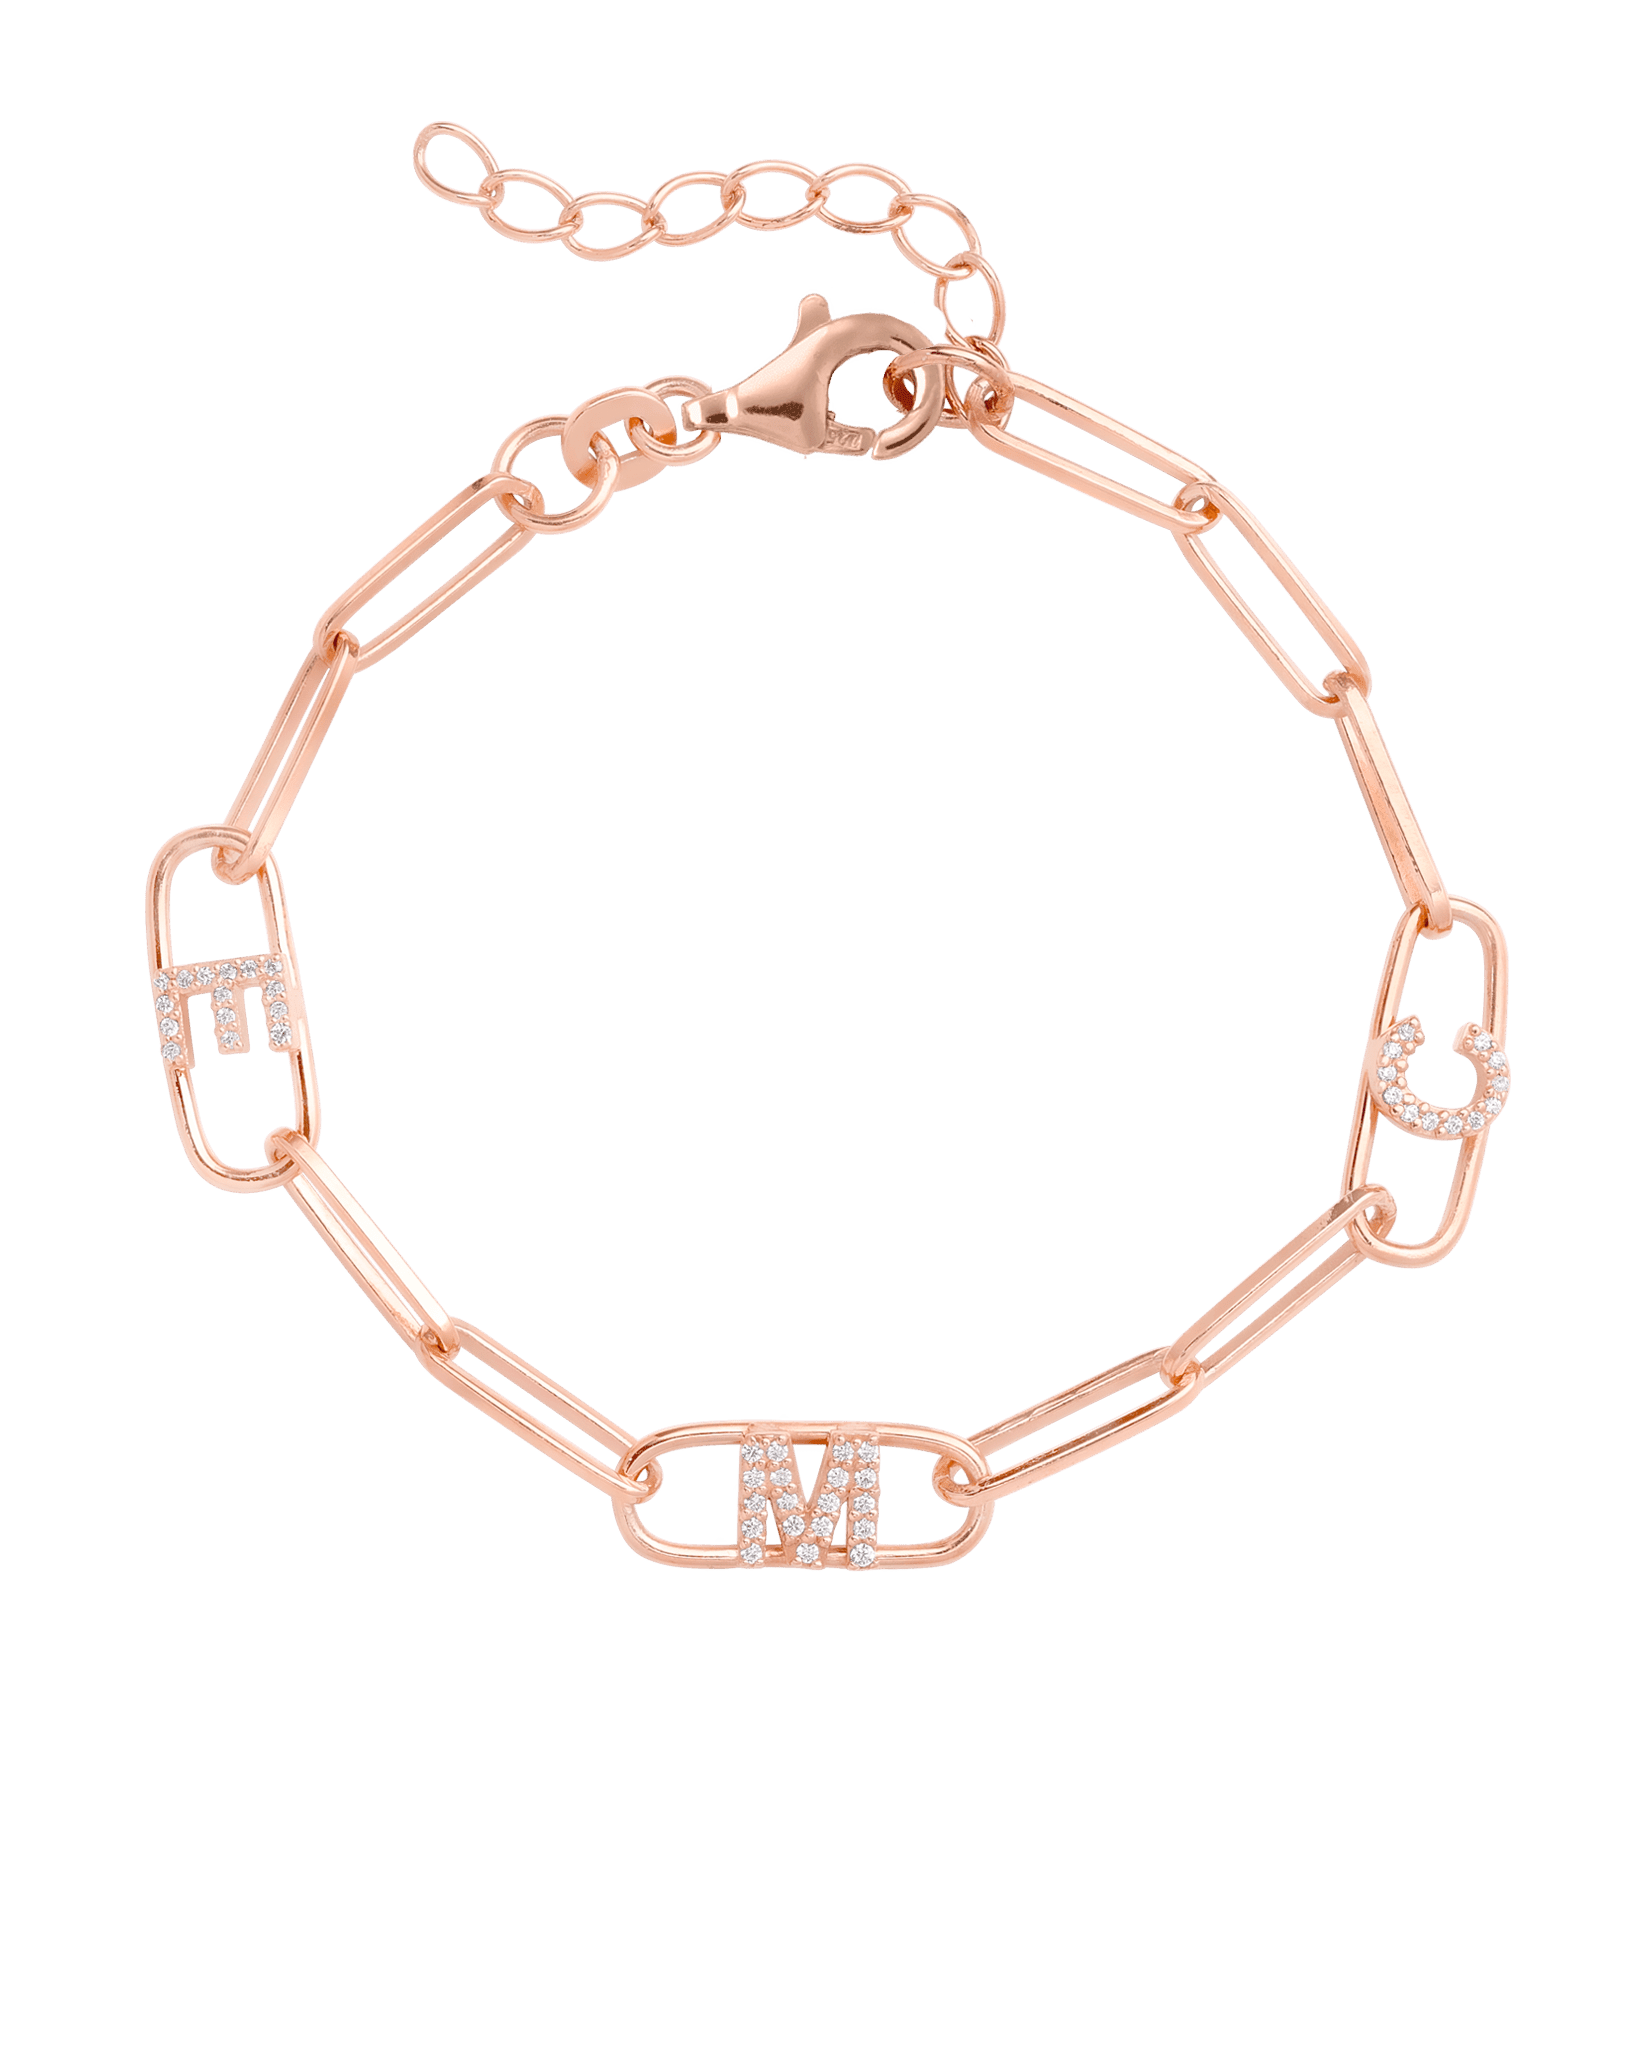 Initials Link Bracelet - 18K Rose Vermeil Bracelets magal-dev 1 Initial 6" + 1" Extender 